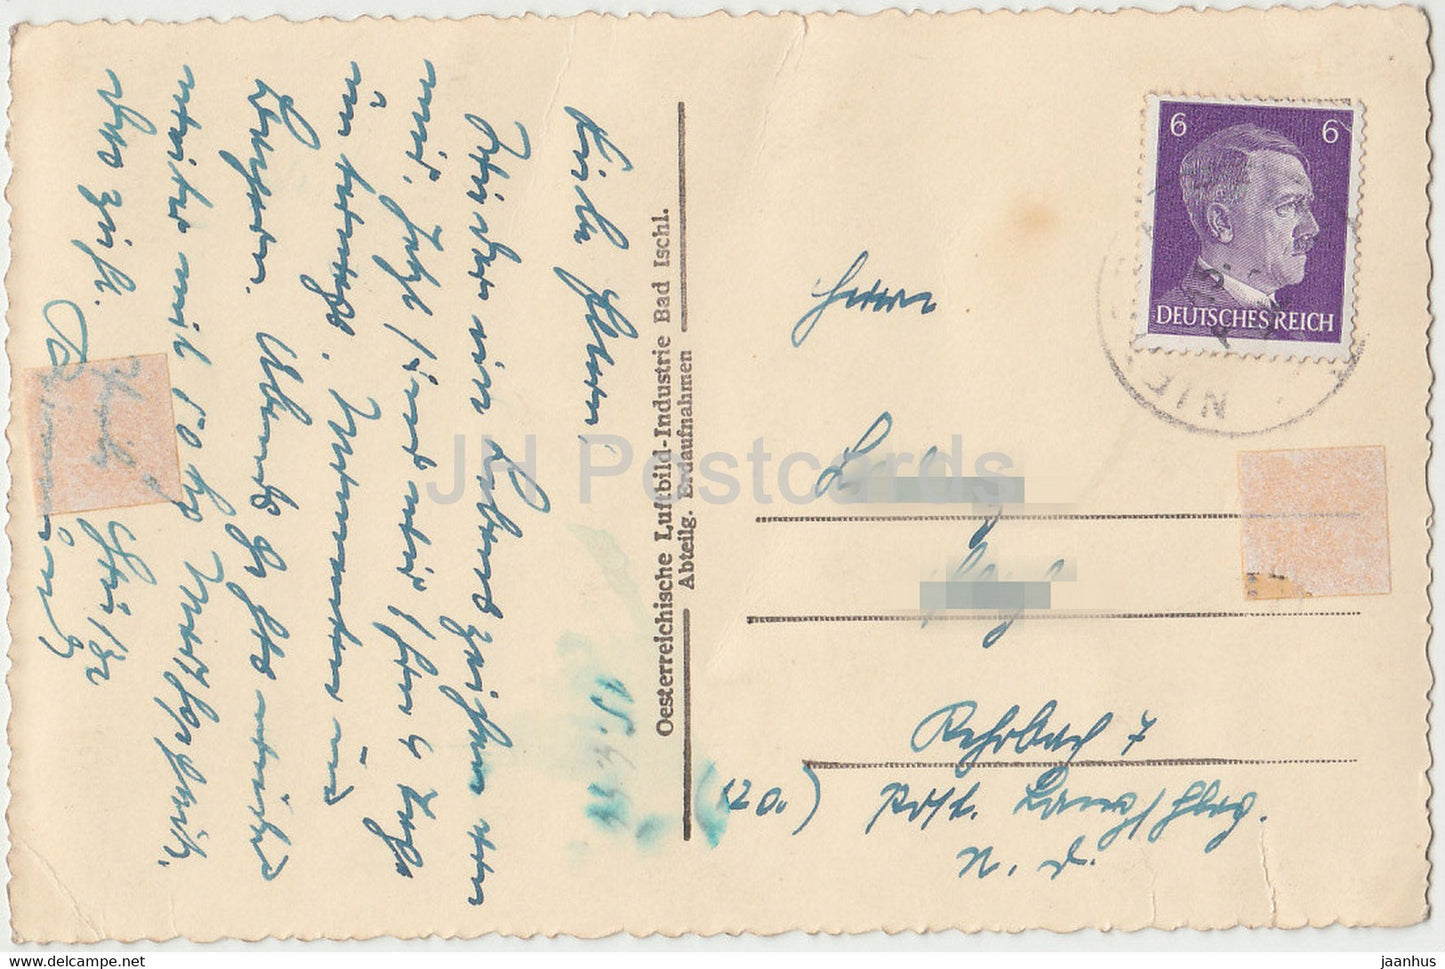 Linz - Landungsplatz - Schiff - Dampfer - alte Postkarte - 1944 - Österreich - gebraucht